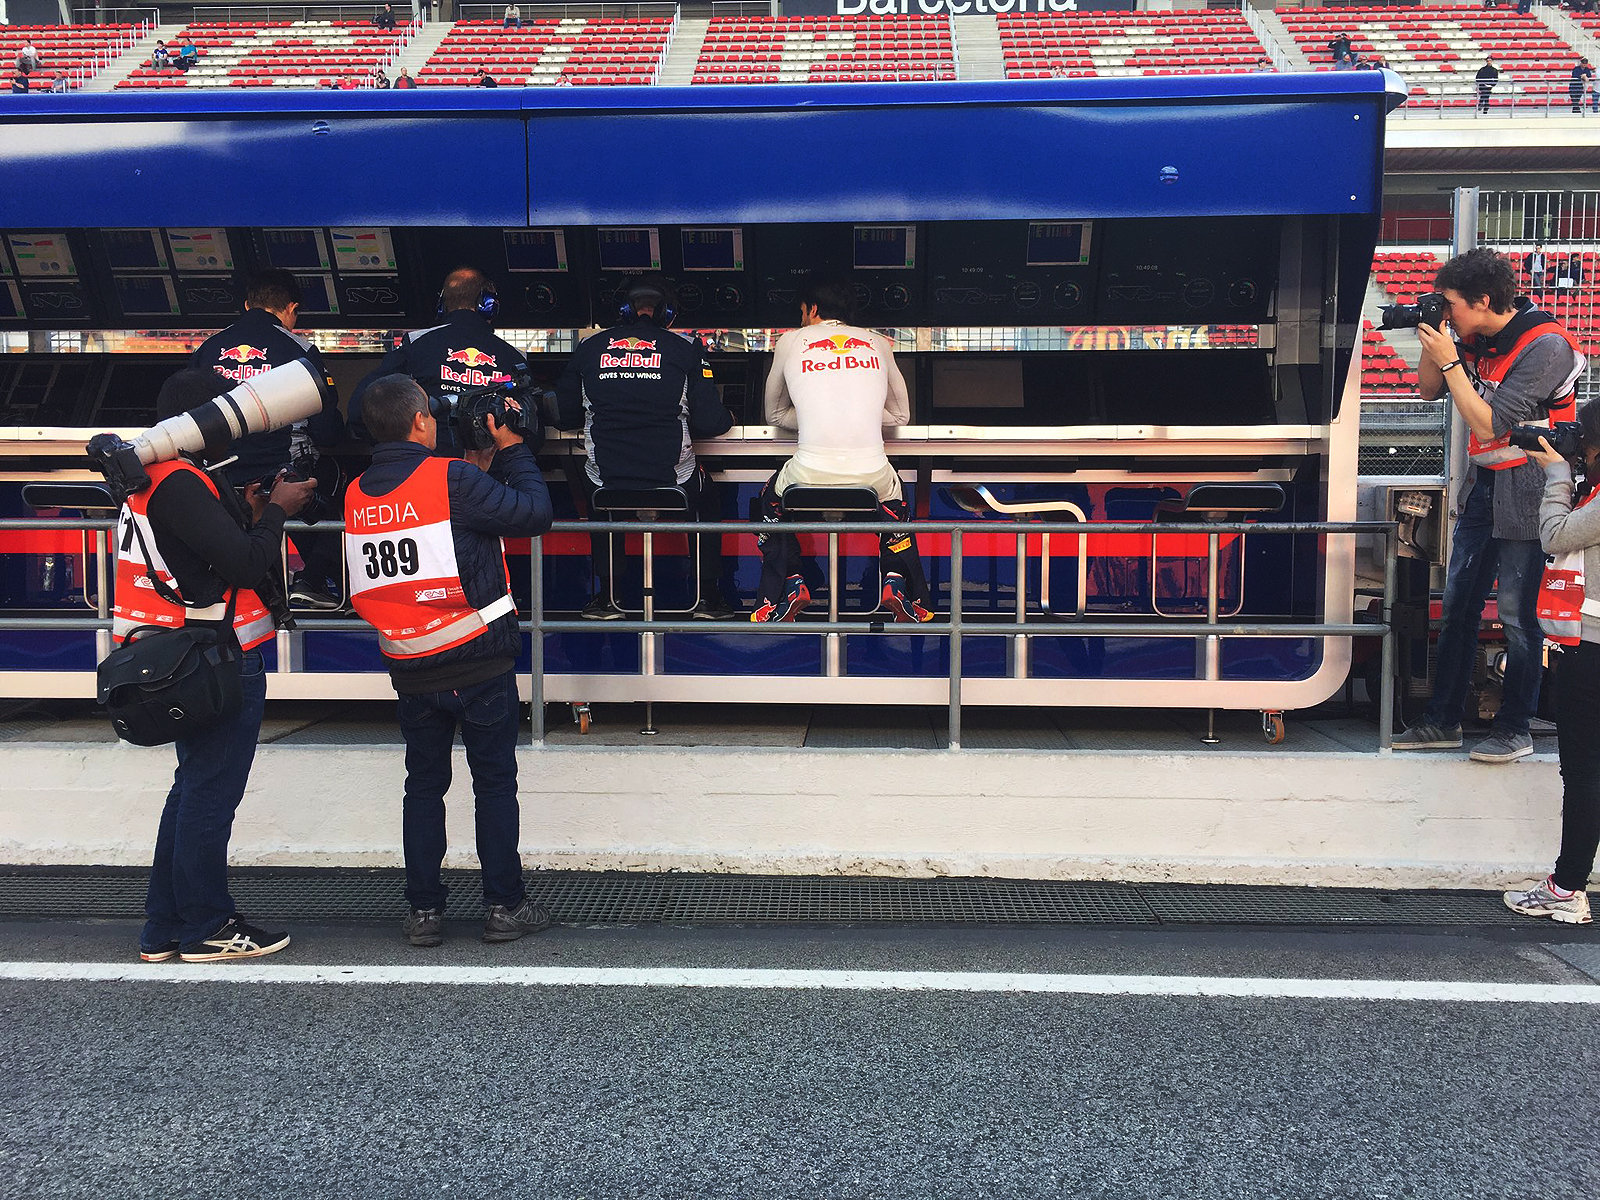 Porada týmu Toro Rosso, Sainz jr. ještě v nedbalkách. Ale všeho do času